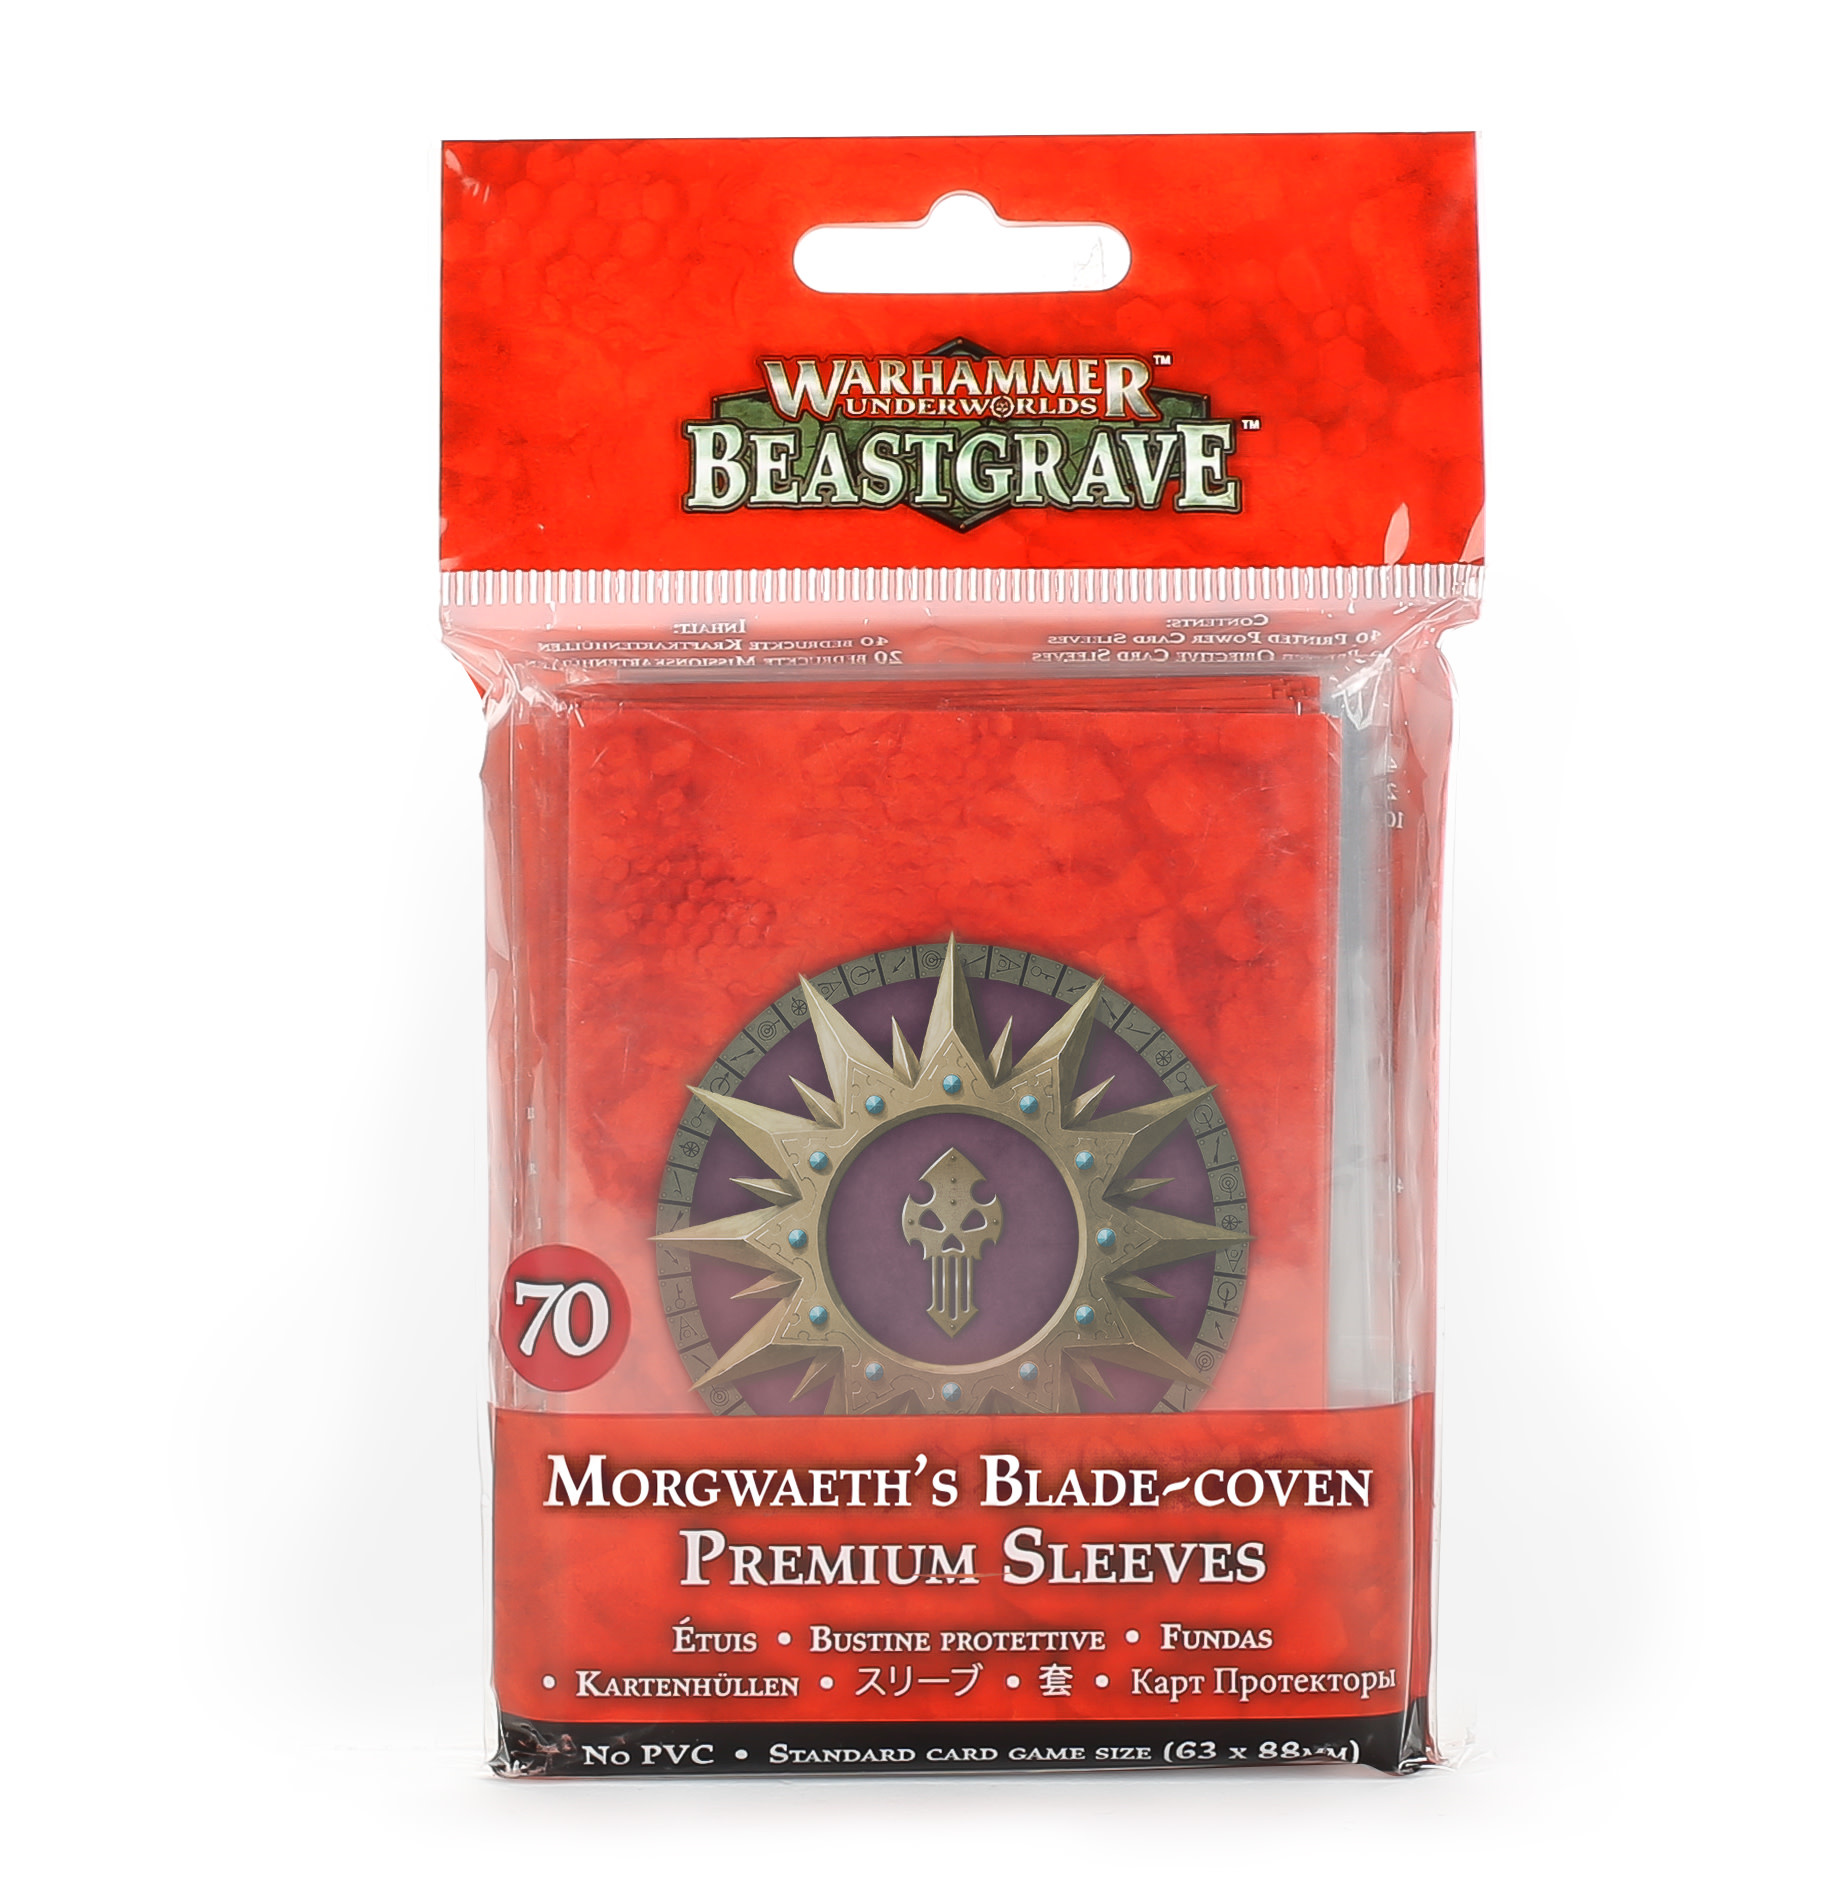 Warhammer Underworlds: Beastgrave: Morgwaeths Blade-Coven Premium Sleeves 